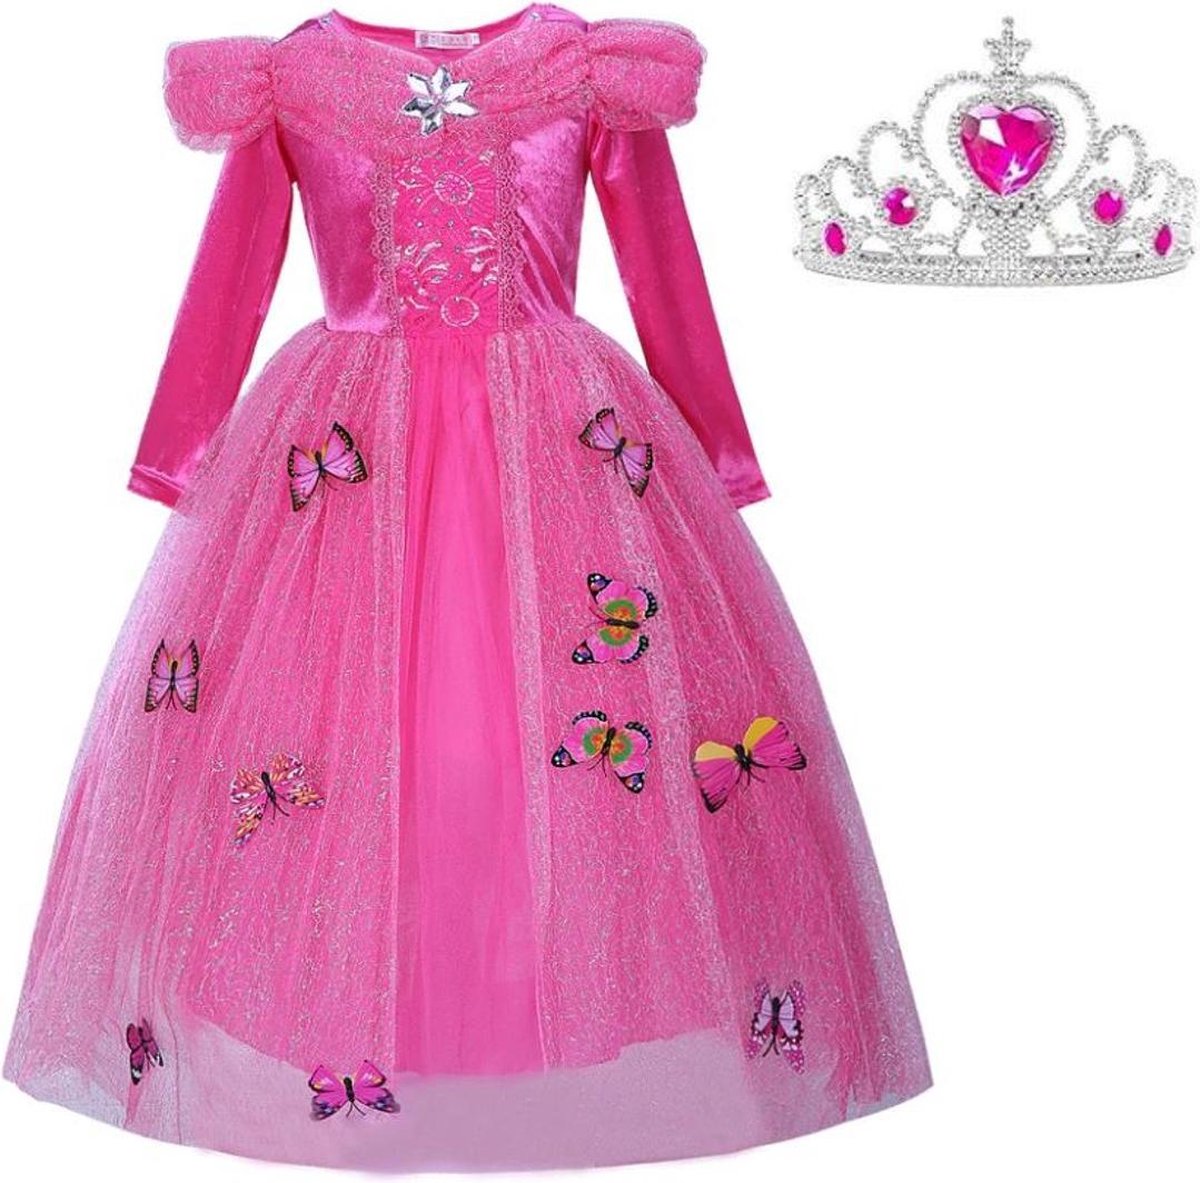 Doornroosje jurk Prinsessen jurk verkleedjurk 140-146 (140) fel roze Luxe met vlinders + kroon verkleedkleding kinderen